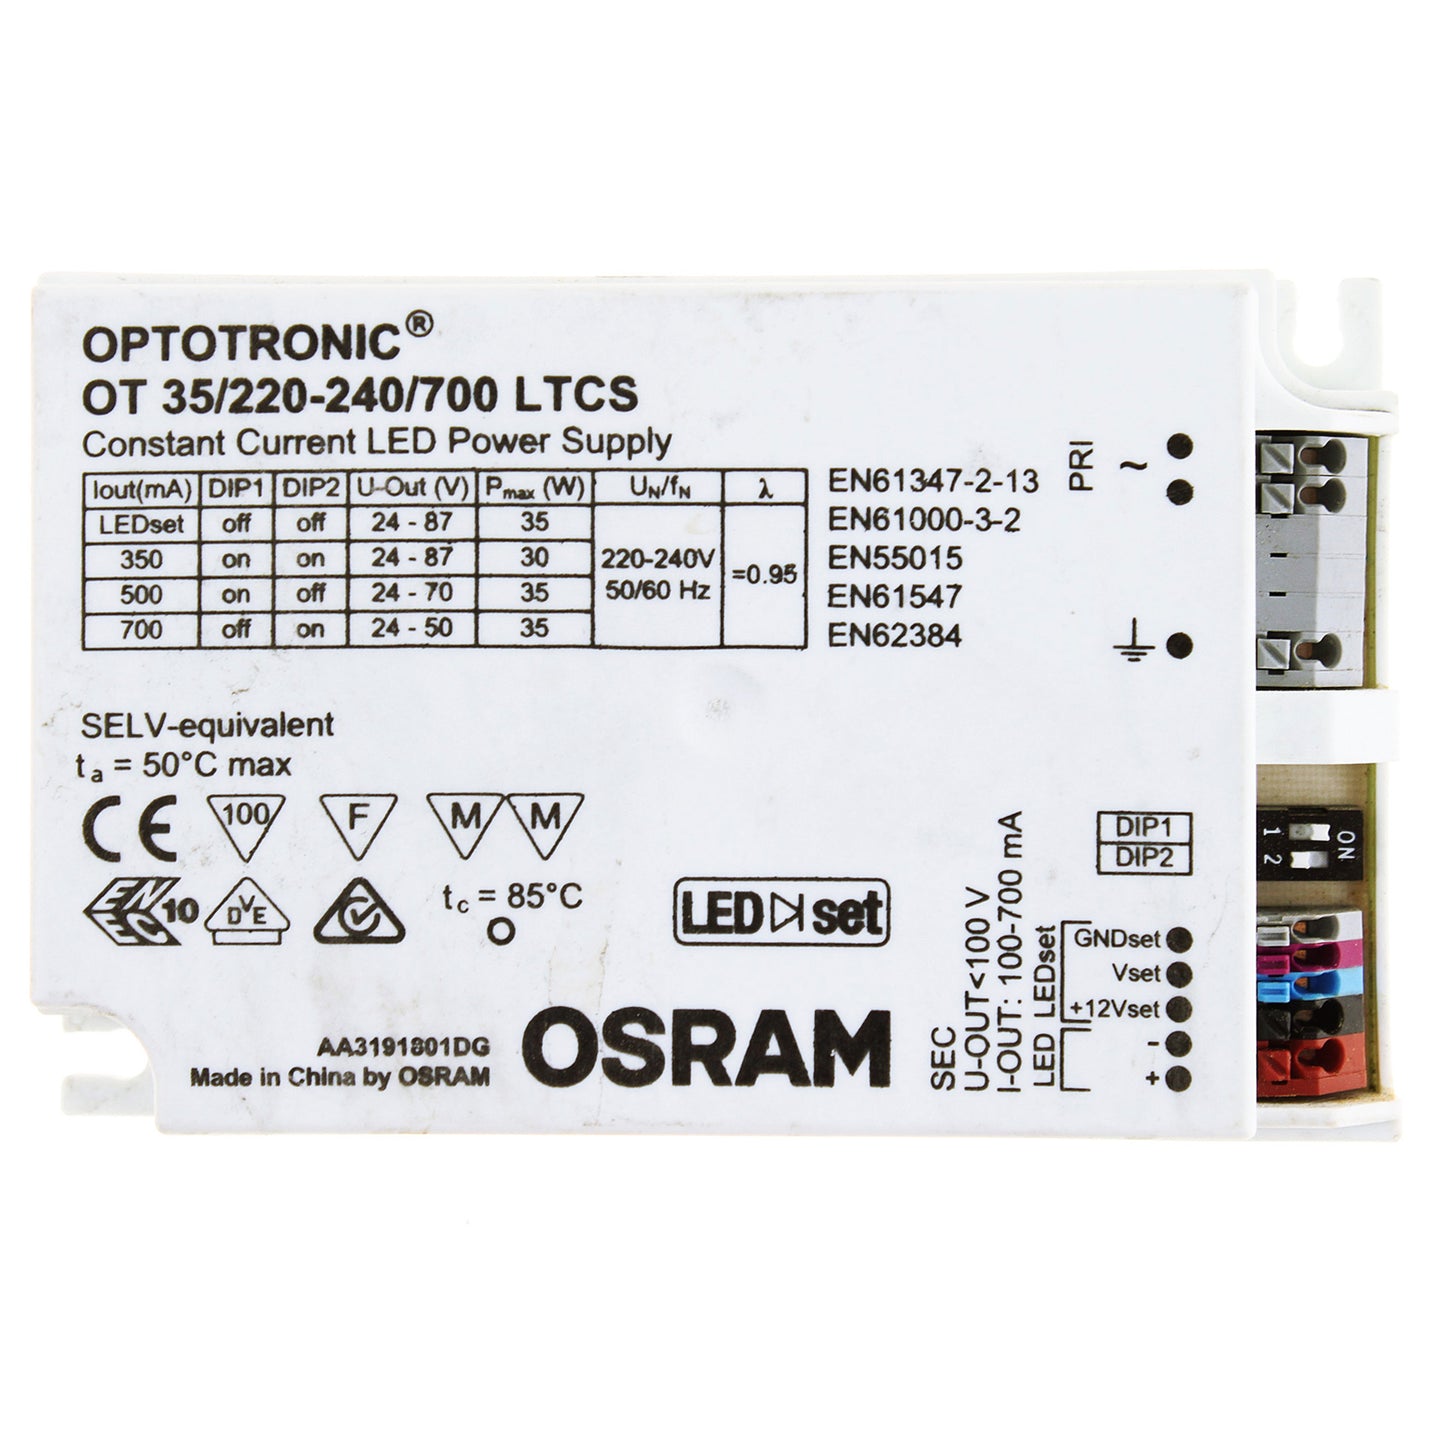 Optotronic OT 35/220-240/700 LTCS